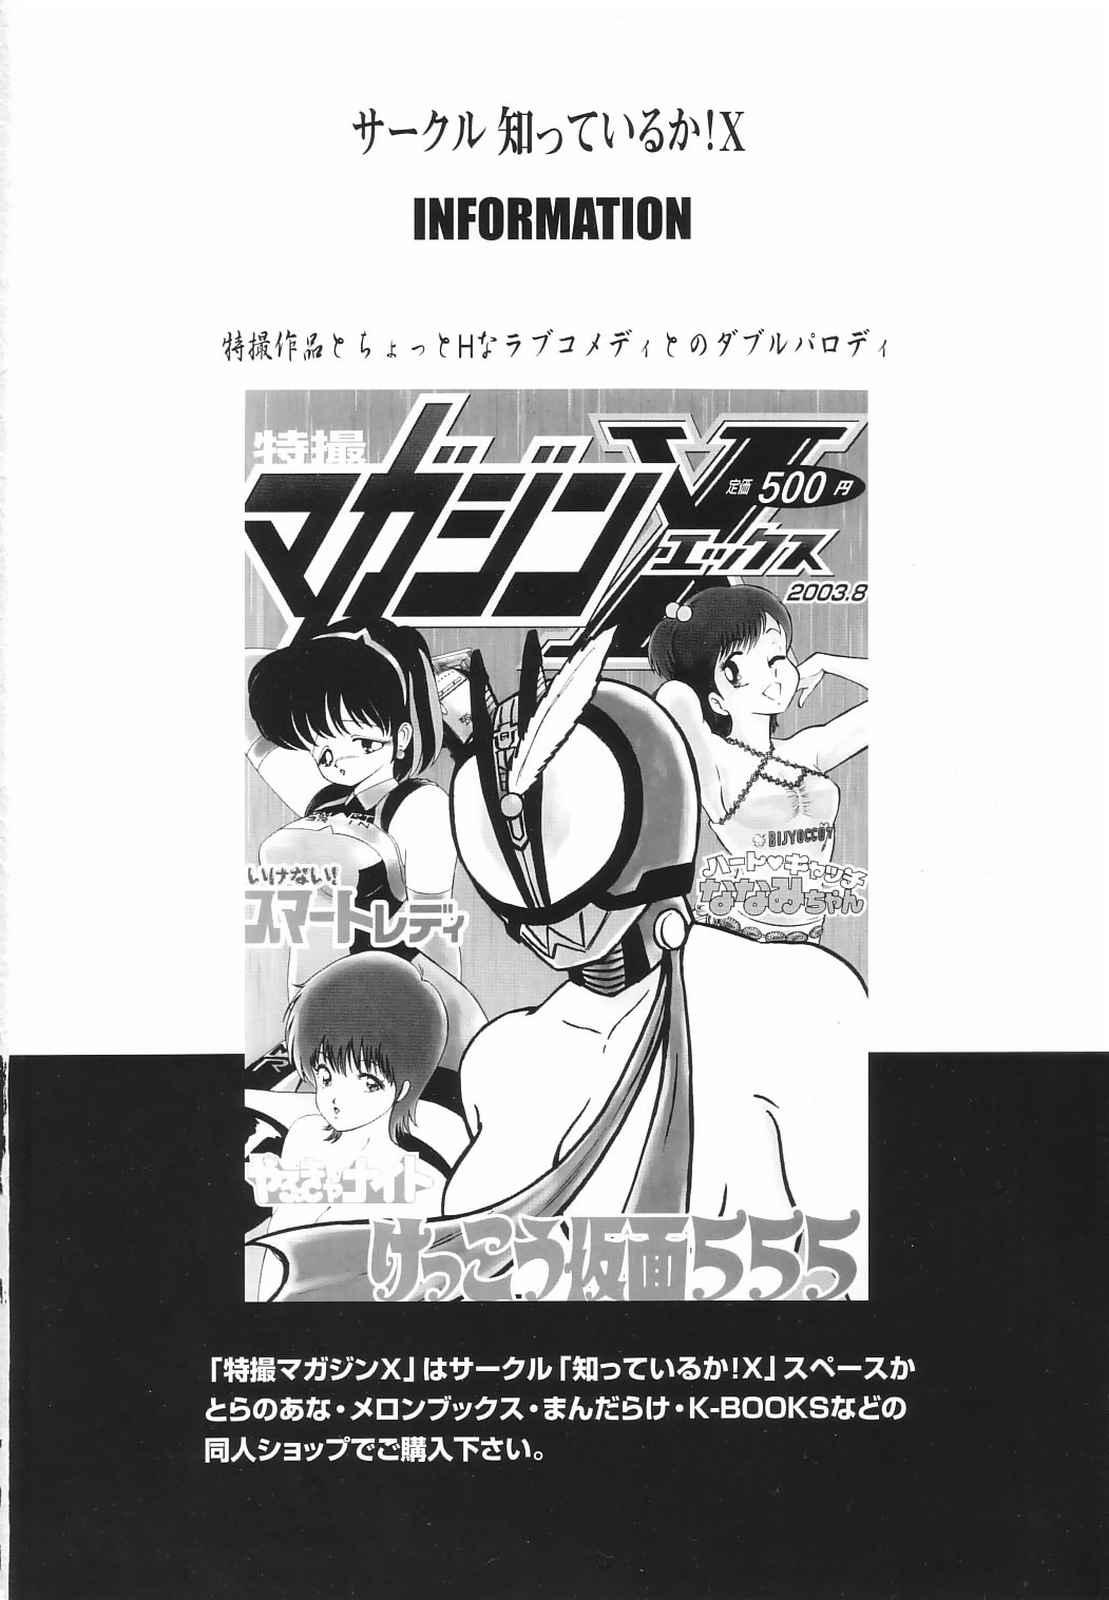 Messy Tokusatsu Magazine x 2003 Fuyu Gou - Sailor moon Ichigo 100 No Condom - Picture 2